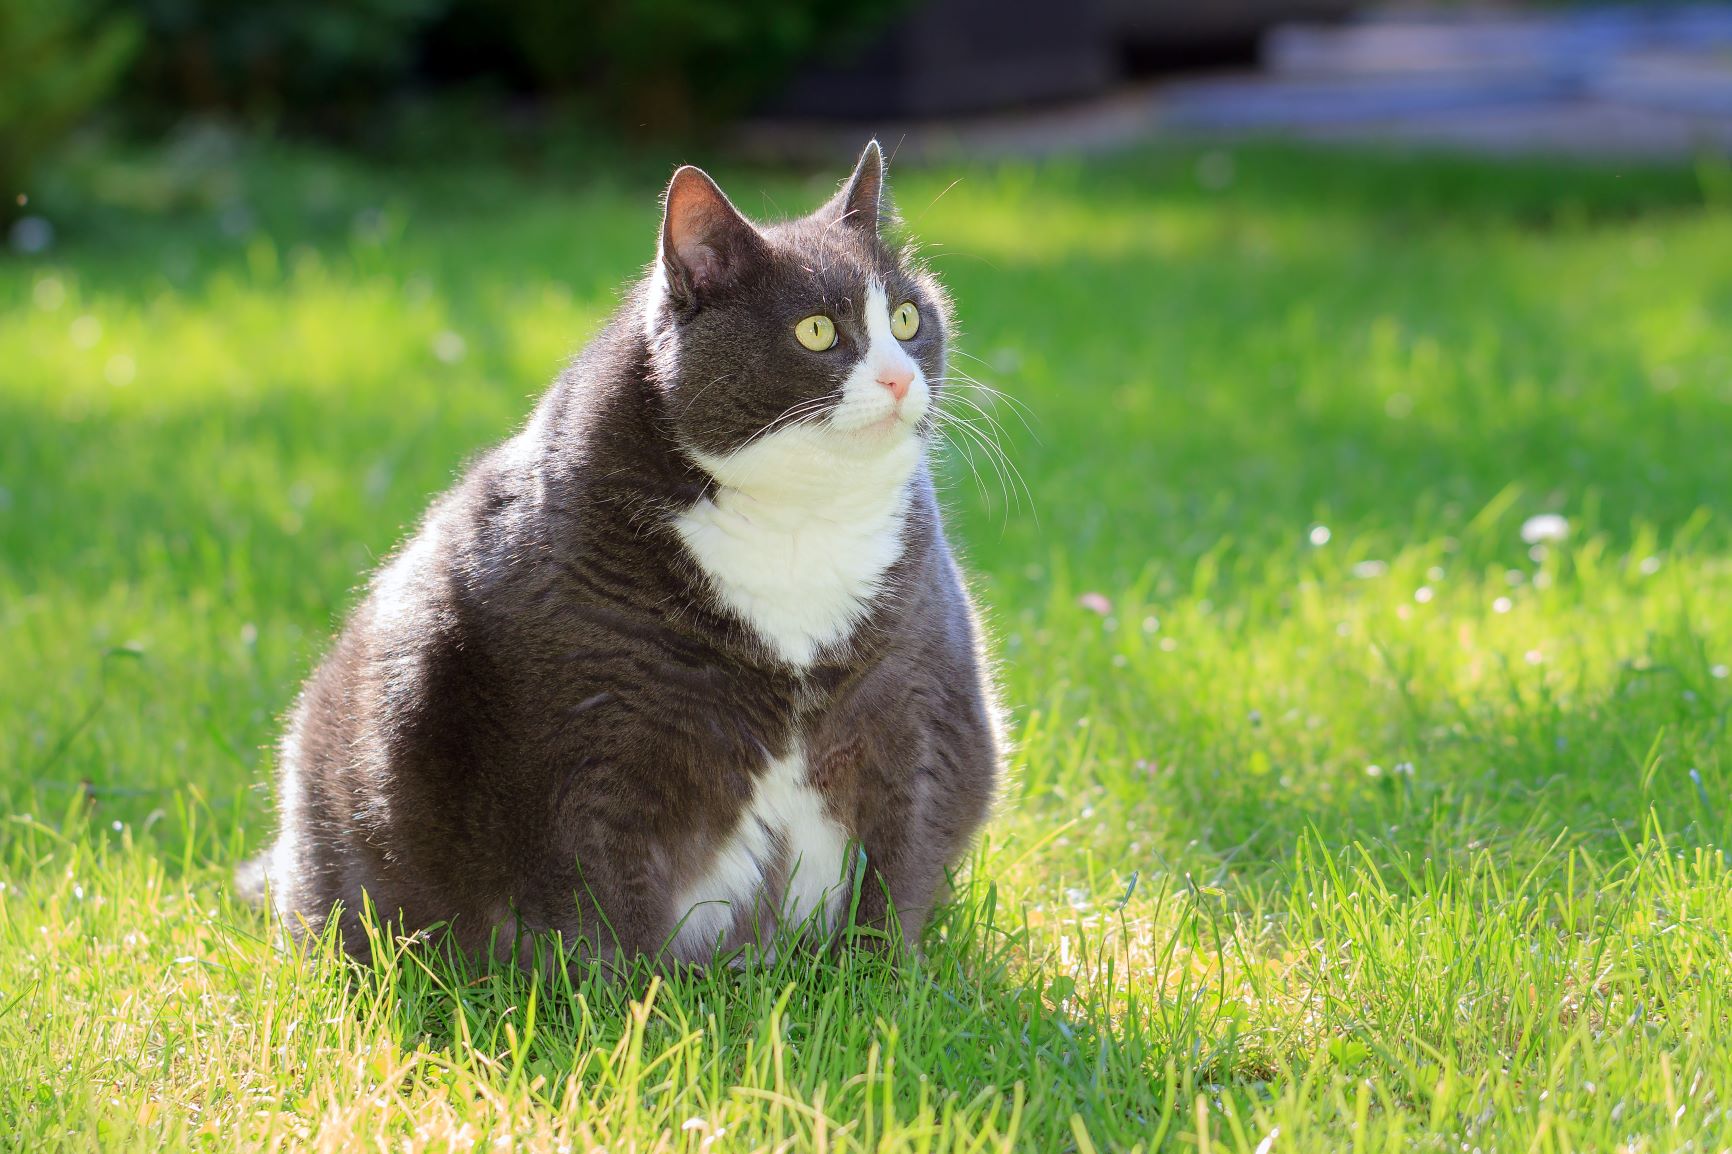 Mitt Flyvningen Perth Blackborough Er min kat overvægtig? Årsager & konsekvenser | zooplus magasin